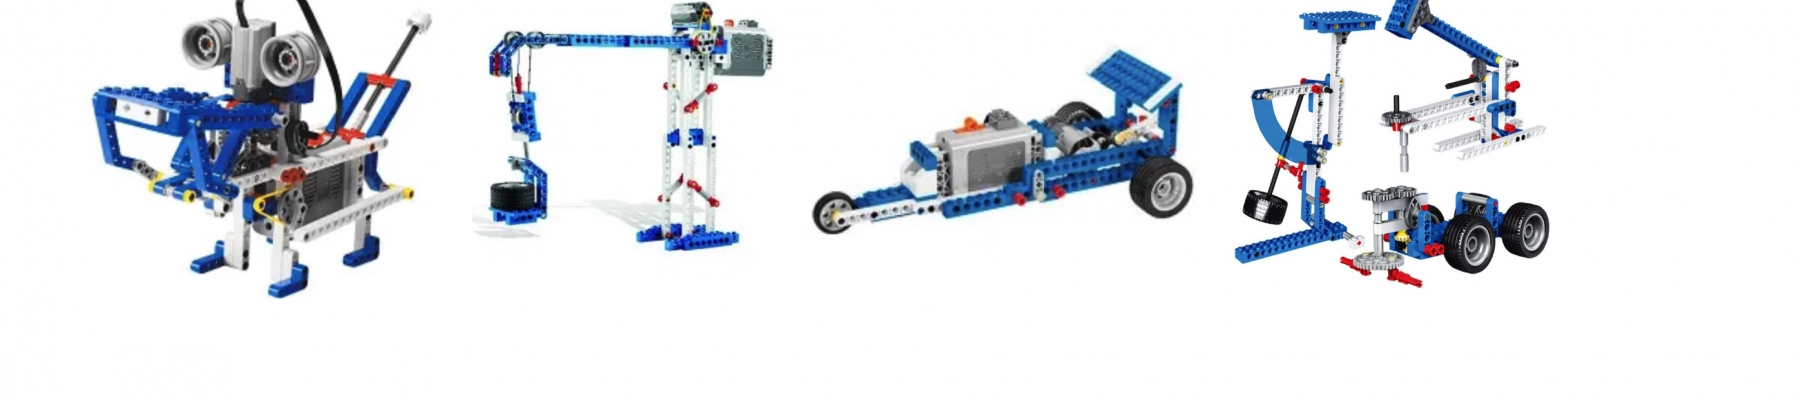 LEGO MACHINES BOUWEN   (LEEG)